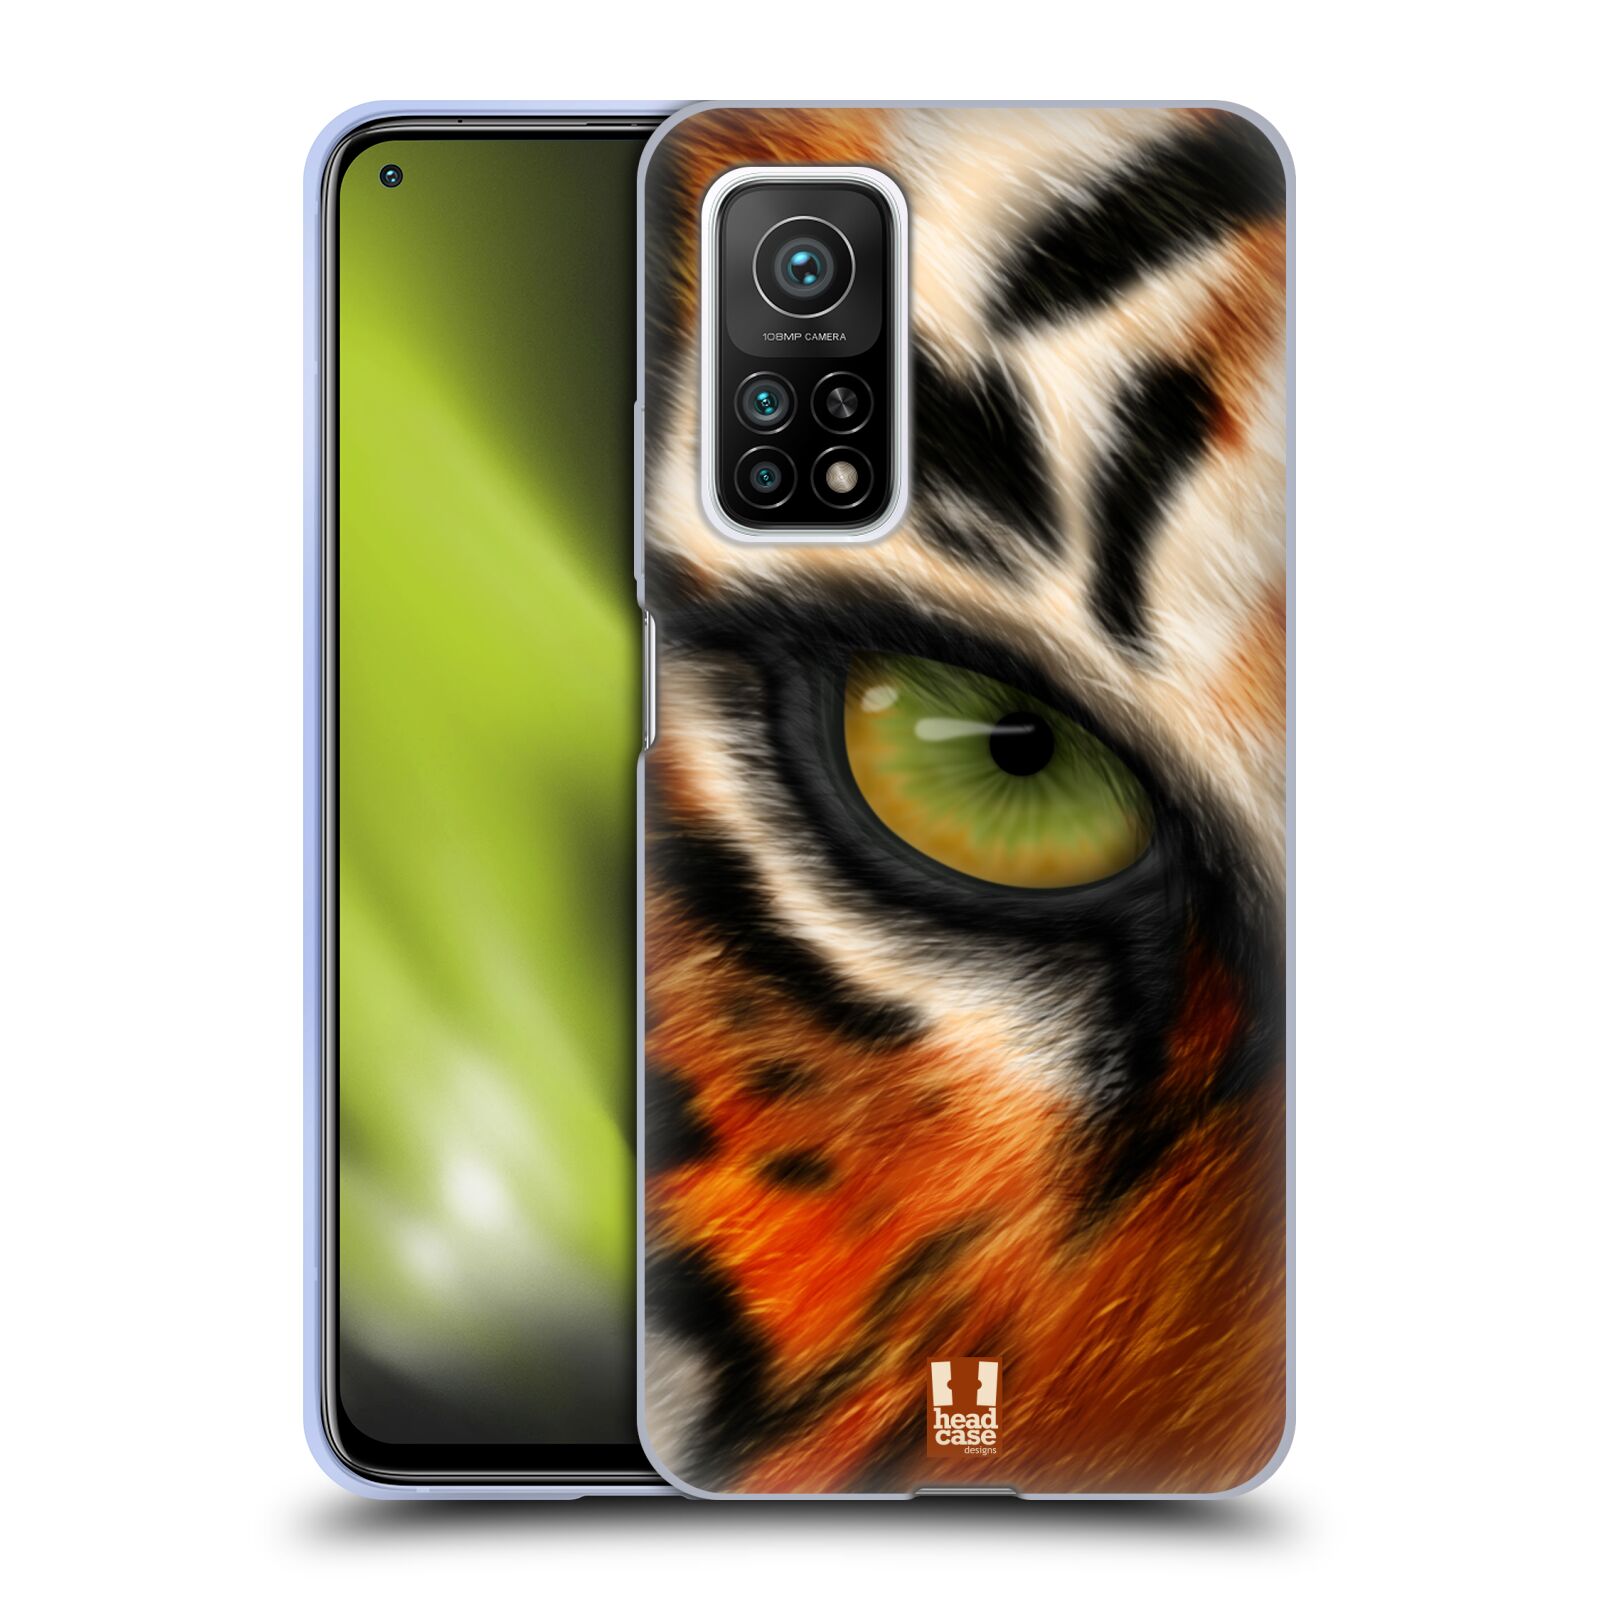 Plastový obal HEAD CASE na mobil Xiaomi Mi 10T a Mi 10T PRO vzor pohled zvířete oko tygr